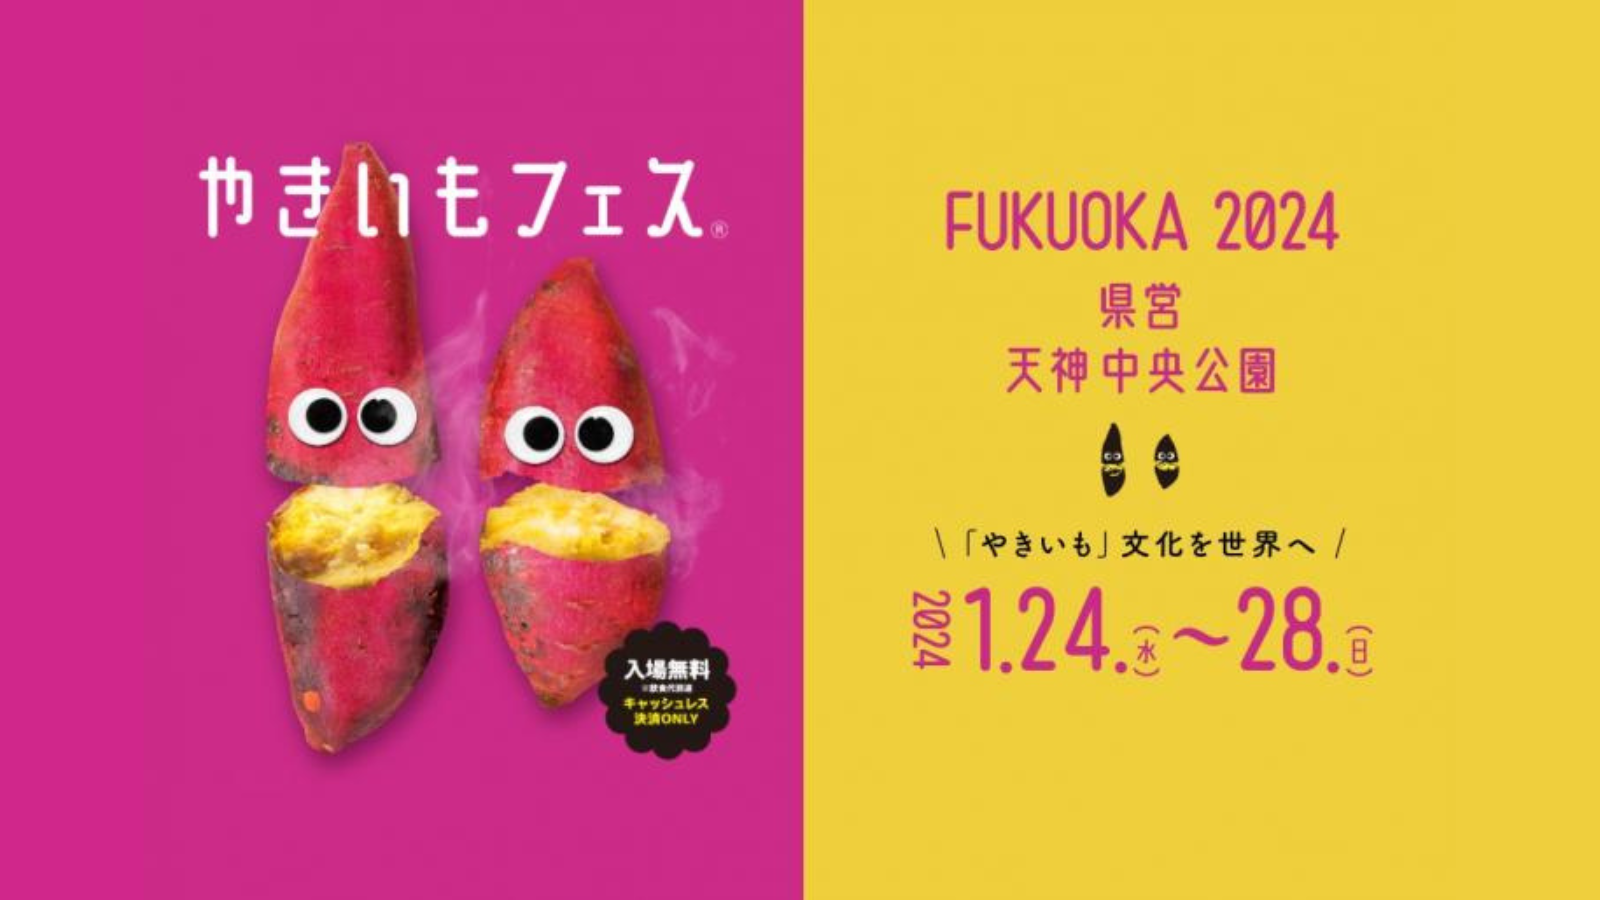 「やきいもフェス FUKUOKA 2024」の会場施工をお手伝いさせていただきました！